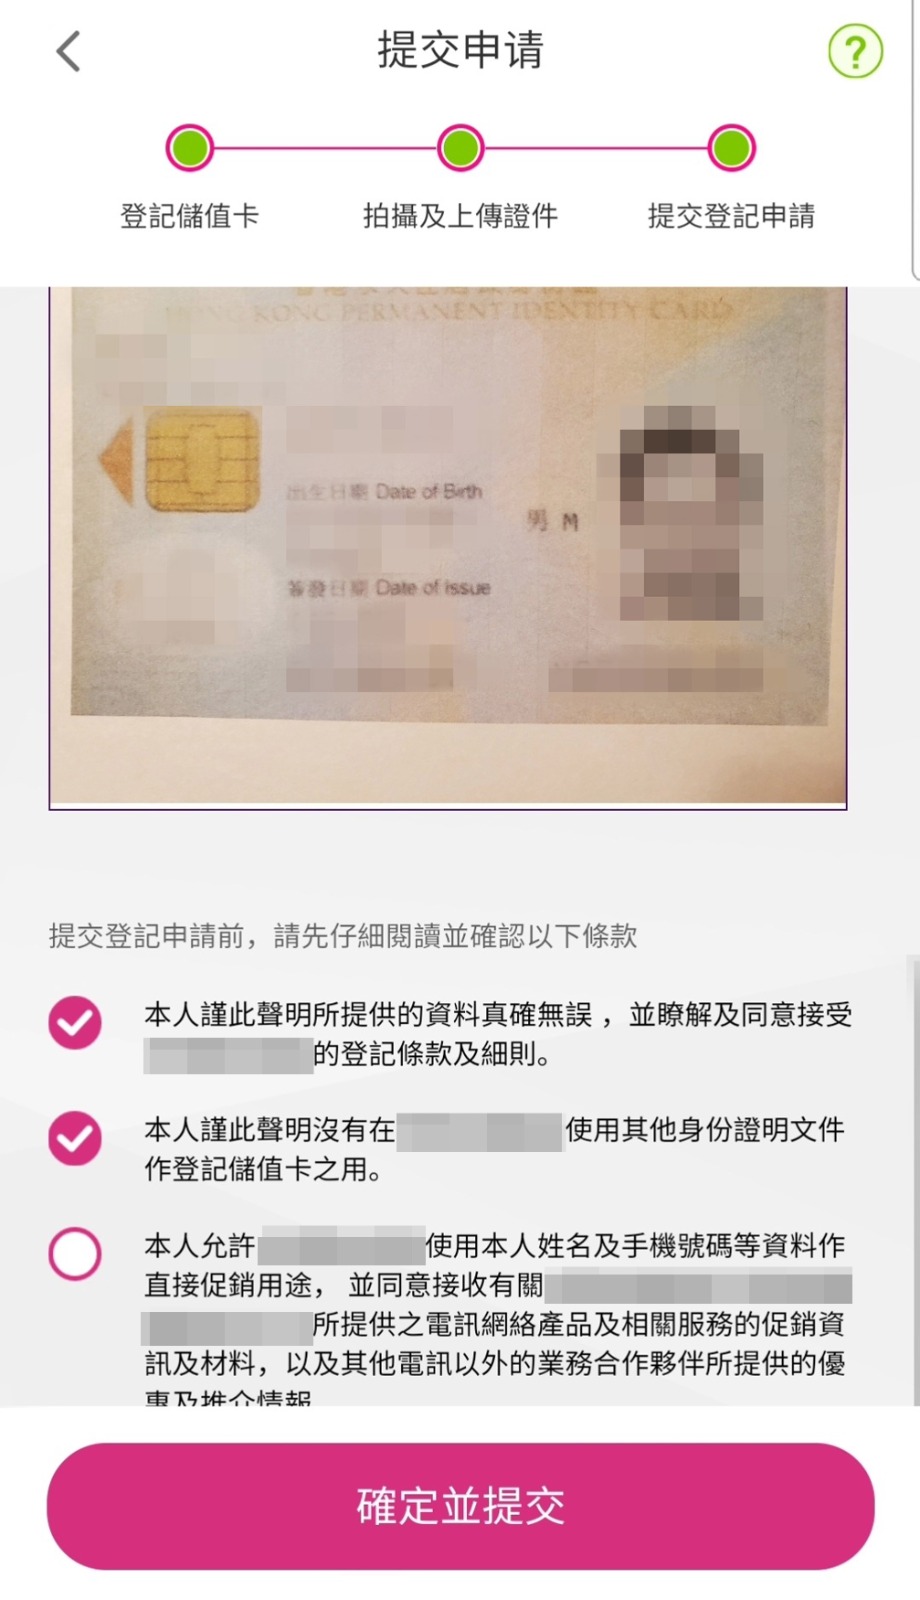 电讯商C当中，记者尝试上传网上下载的他人身分证照片，并输入该身分证号码，结果成功登记。